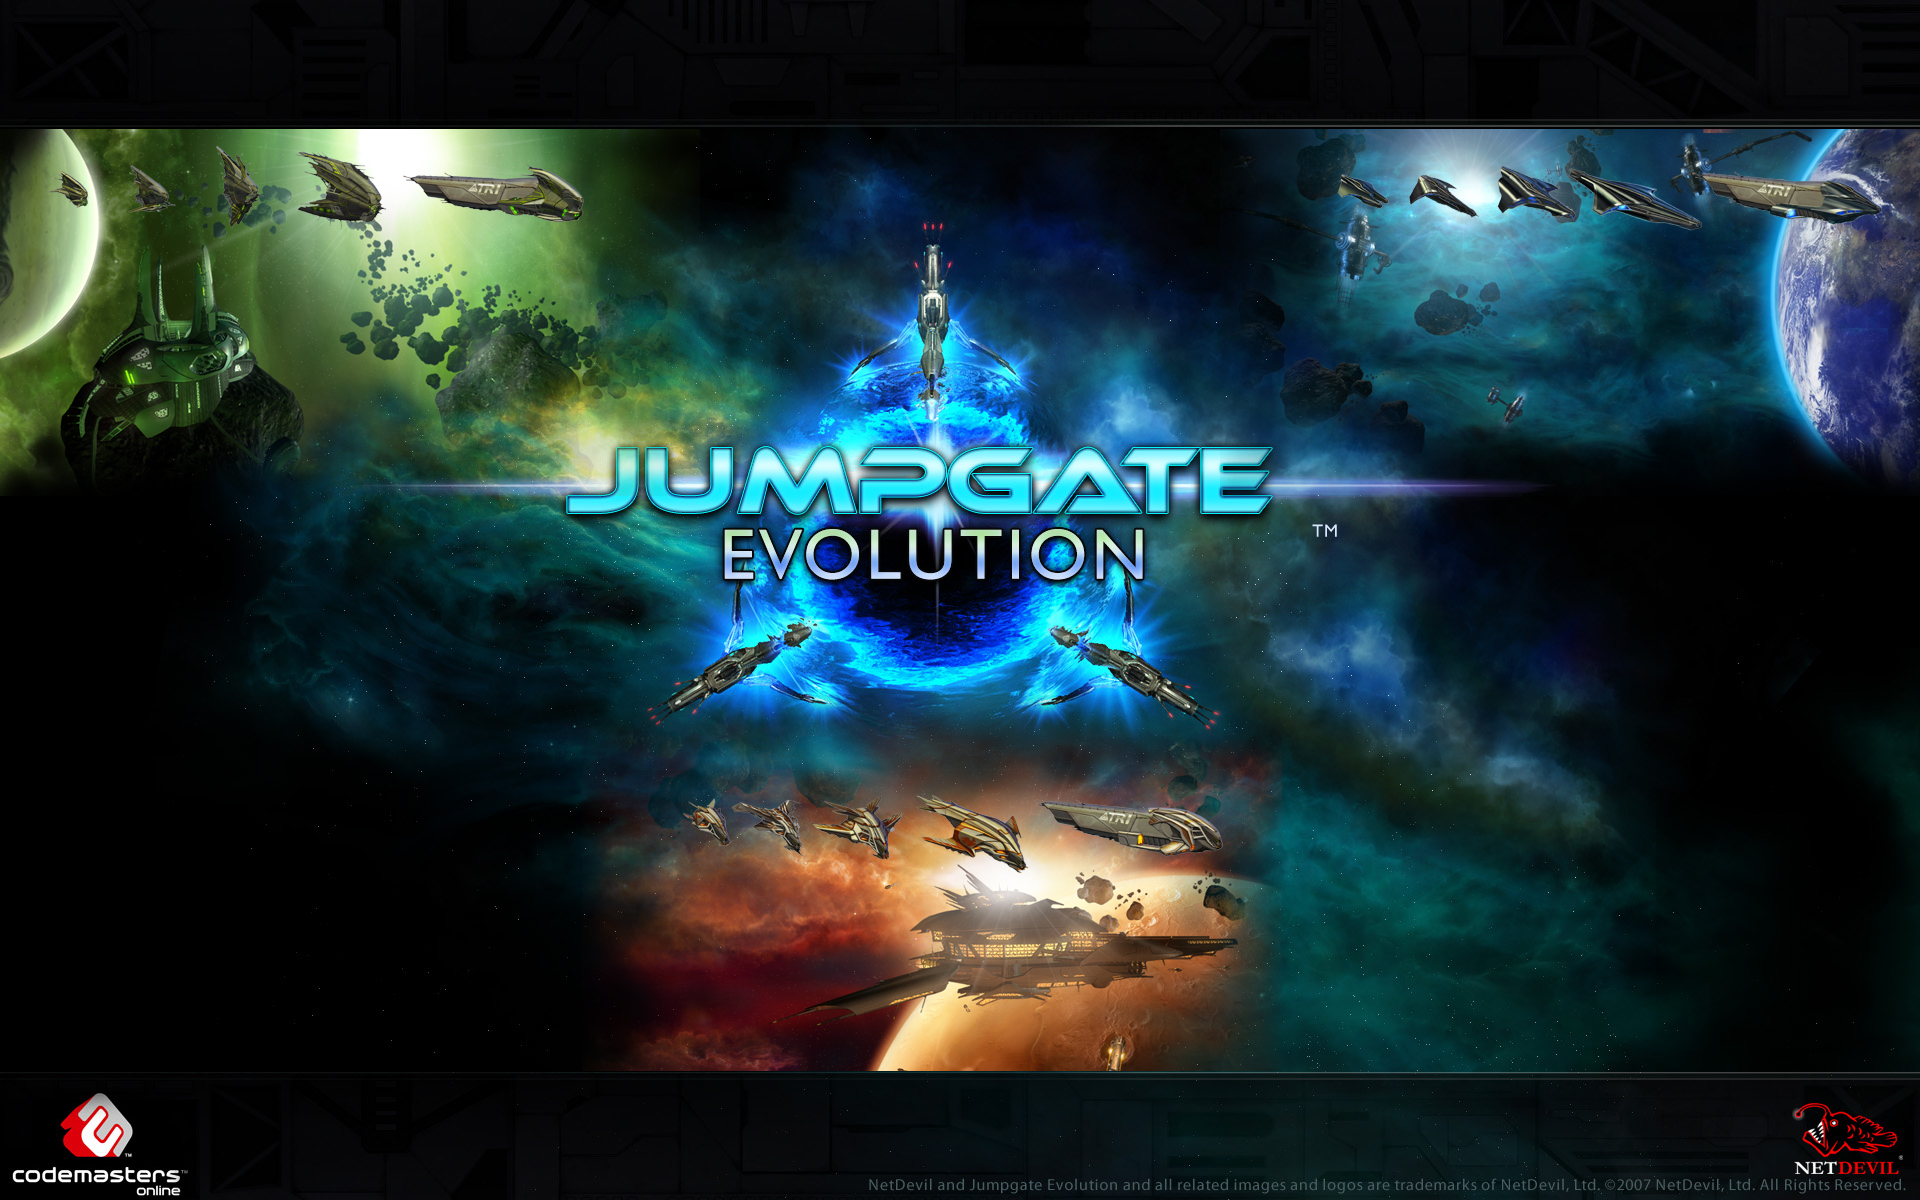 Jumpgate Evolution Backgrounds on Wallpapers Vista